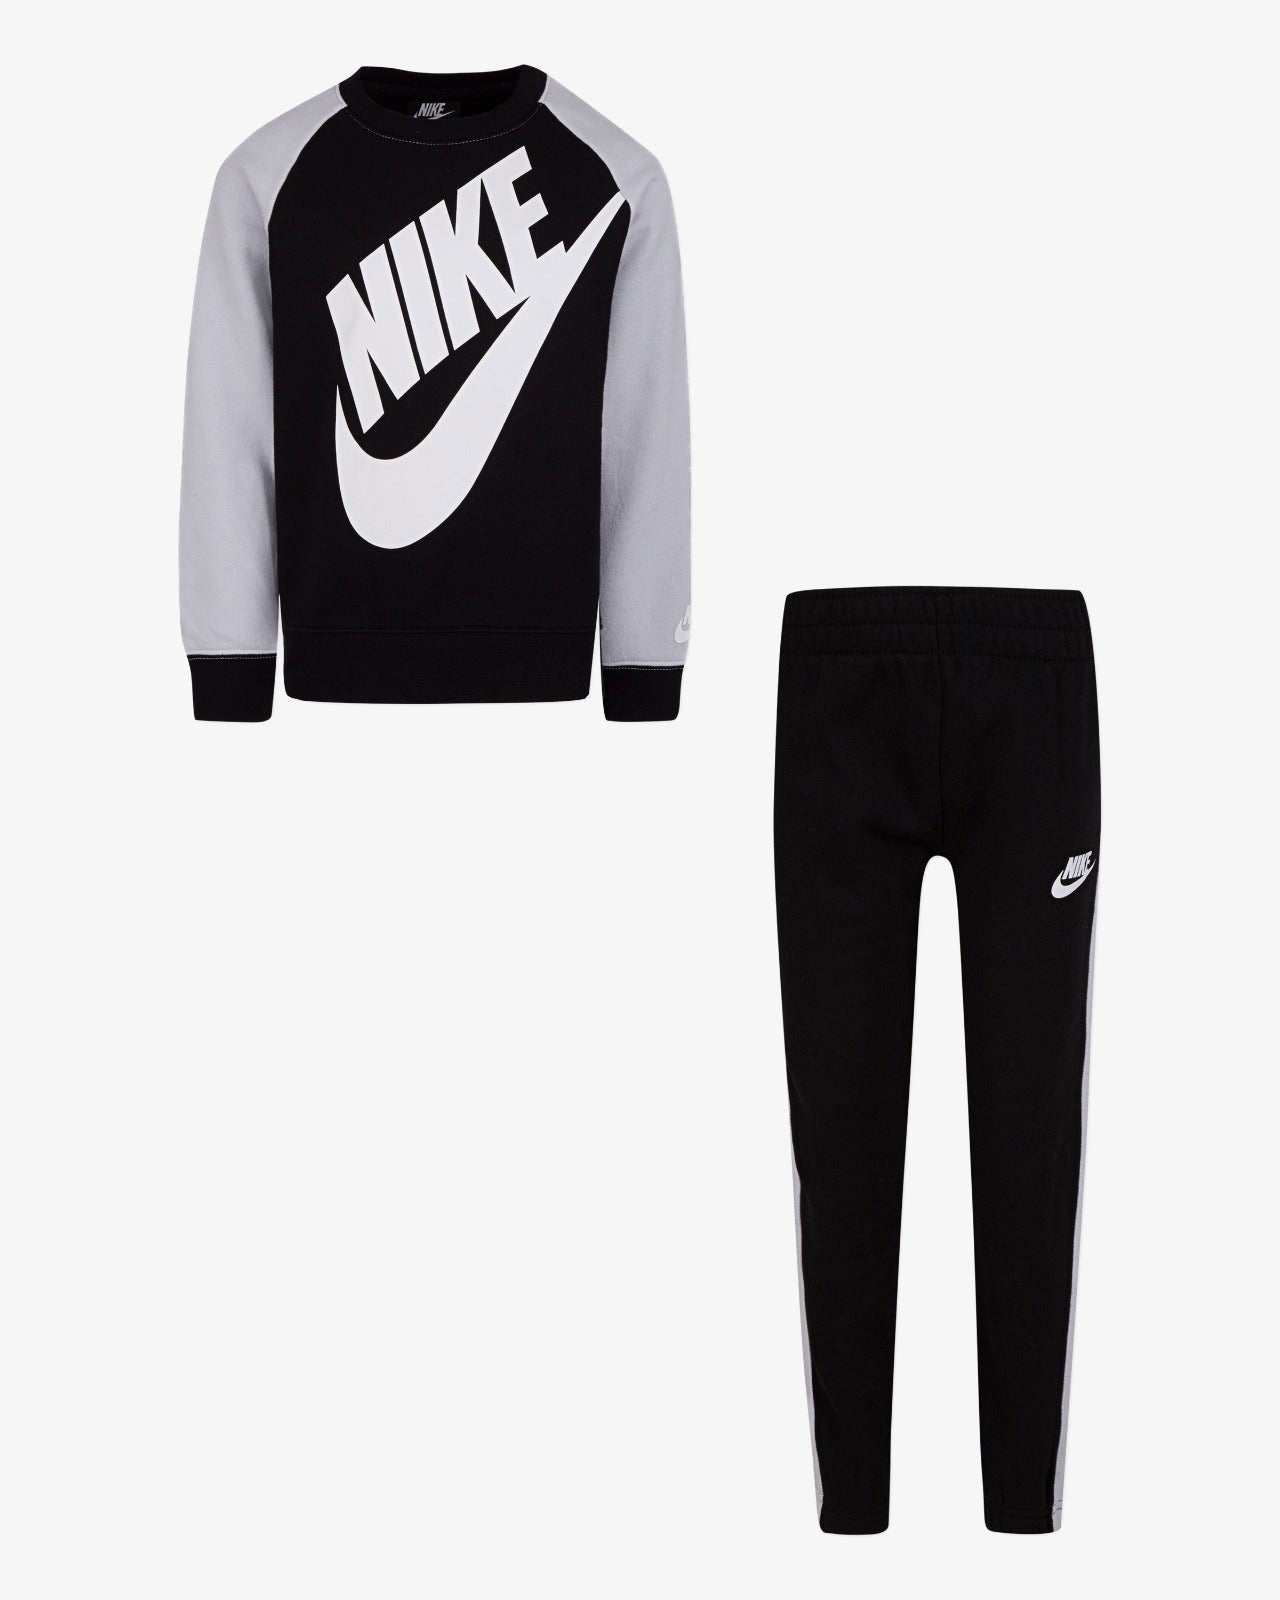 Nike Sportswear Kinder-Set aus Sweatshirt und Hose – Schwarz/Weiß –  Footkorner